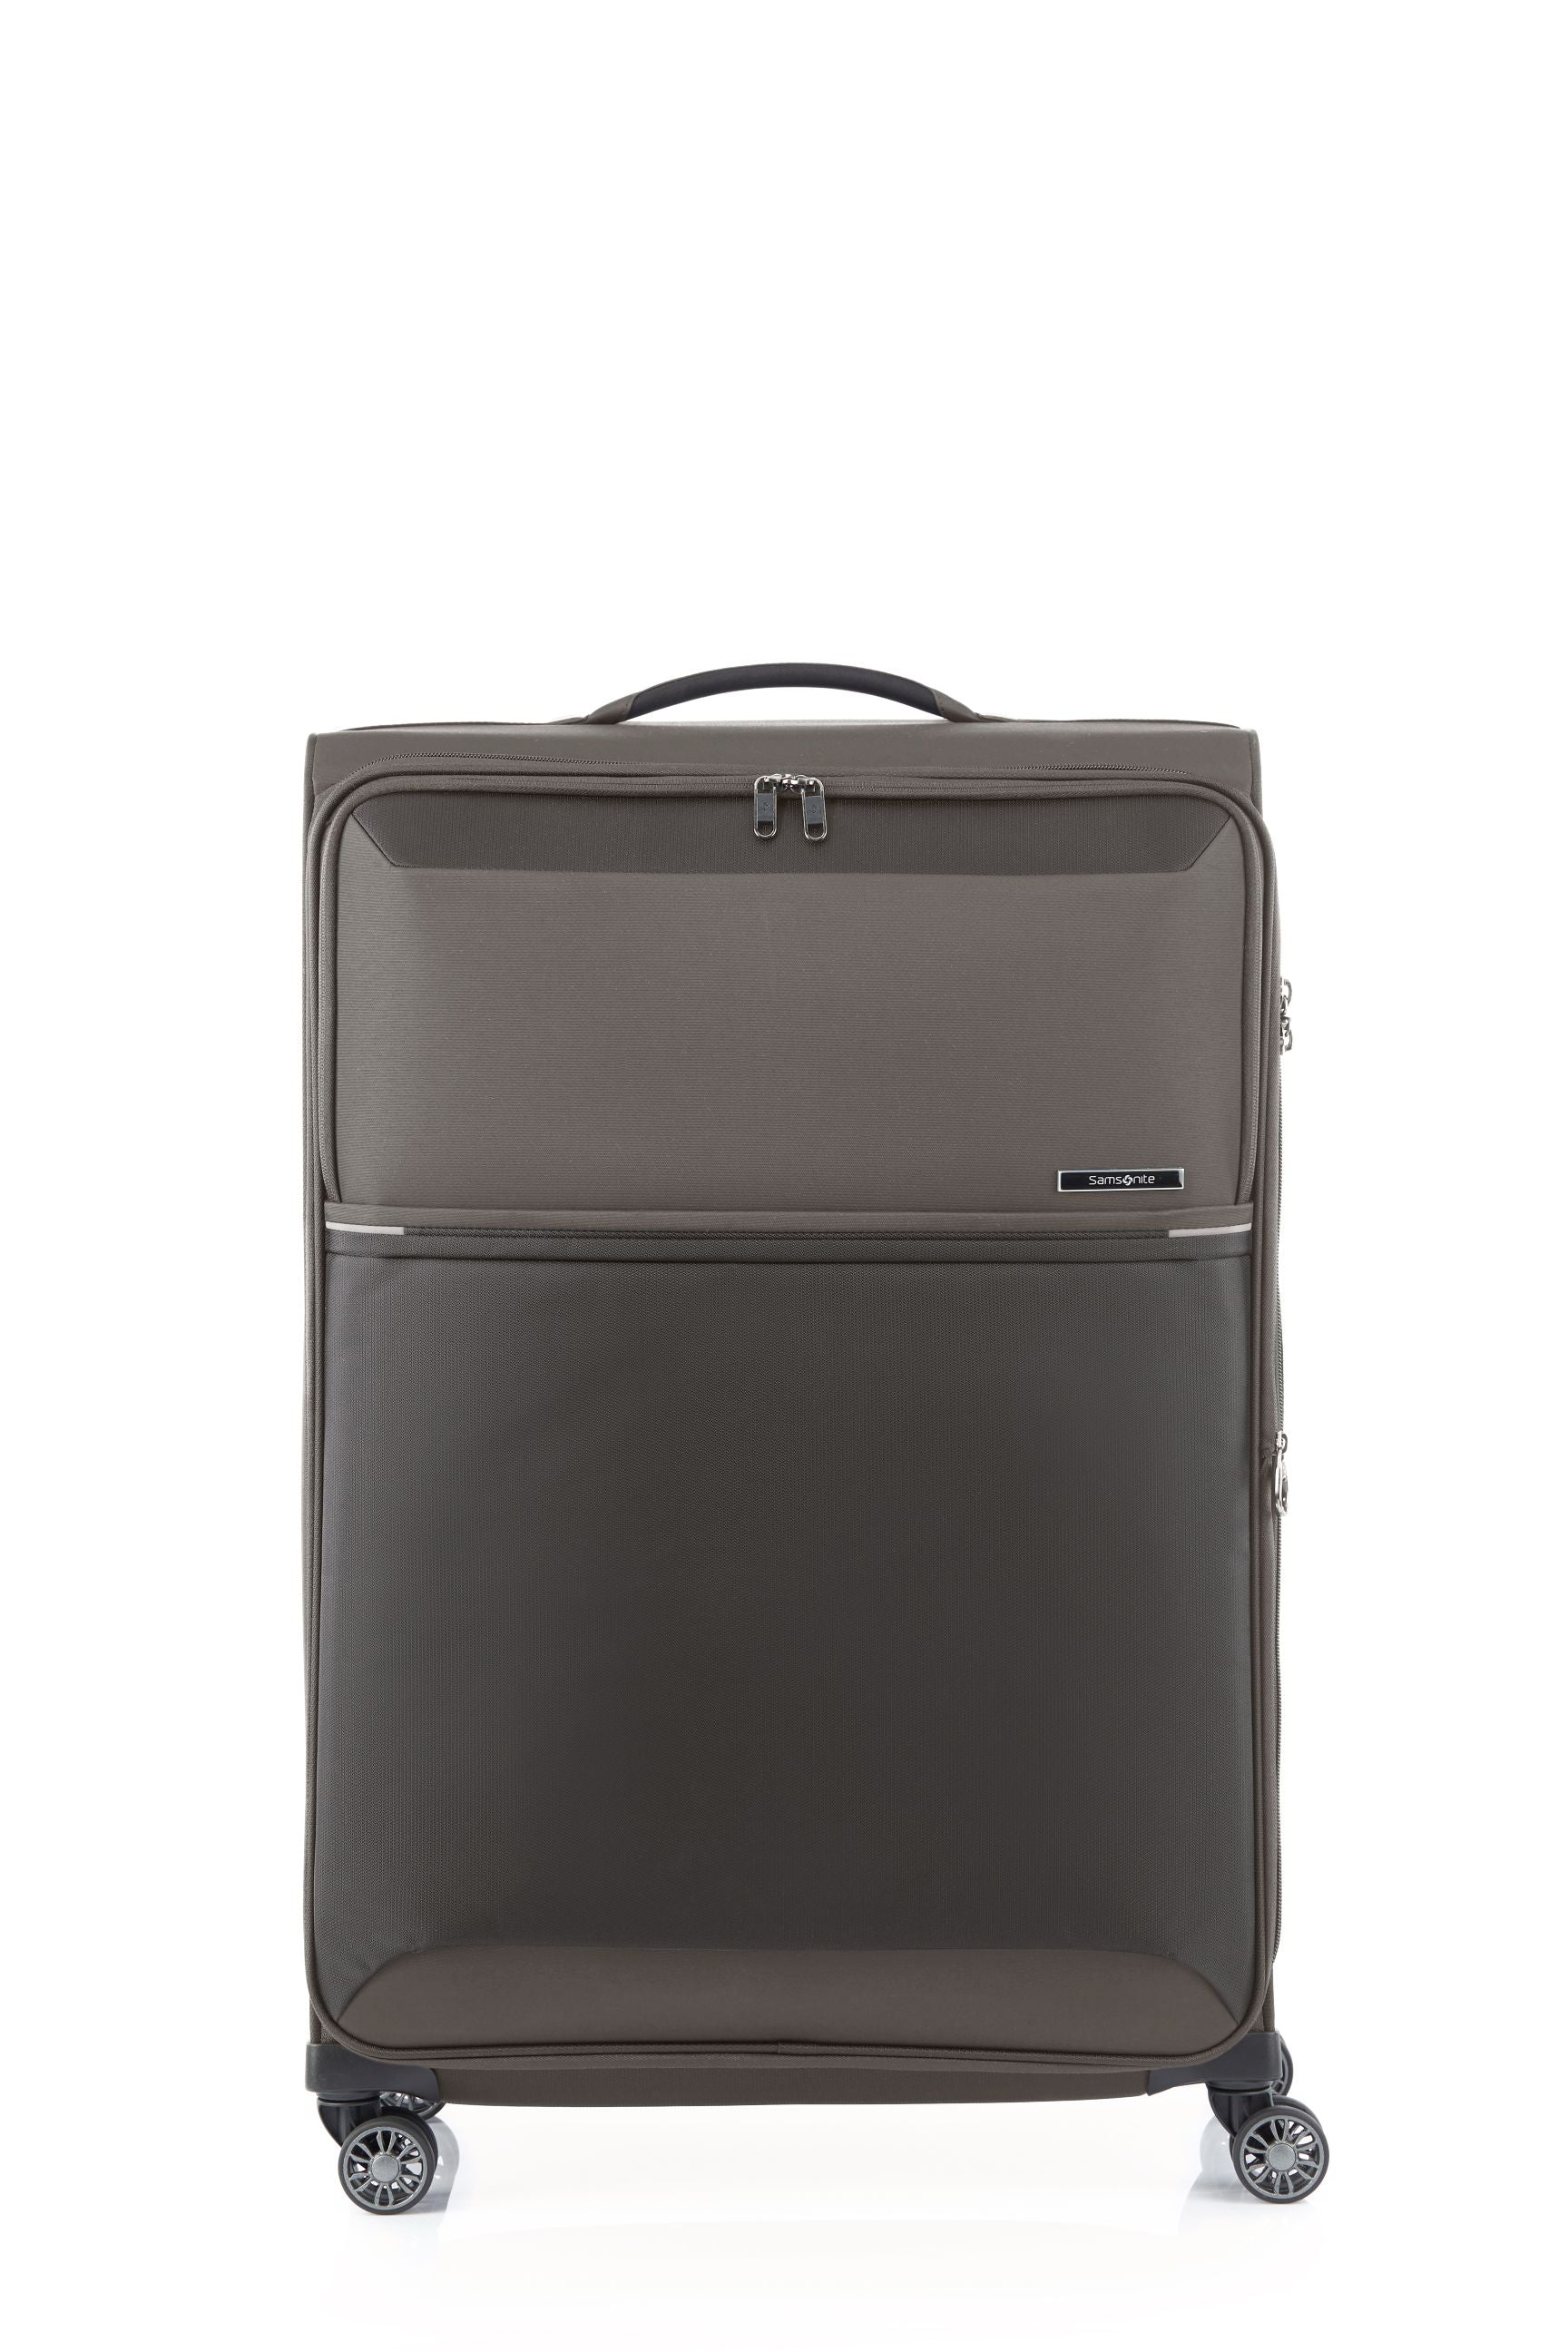 Samsonite 73HR 78cm Large Suitcase - Platinum Grey-2